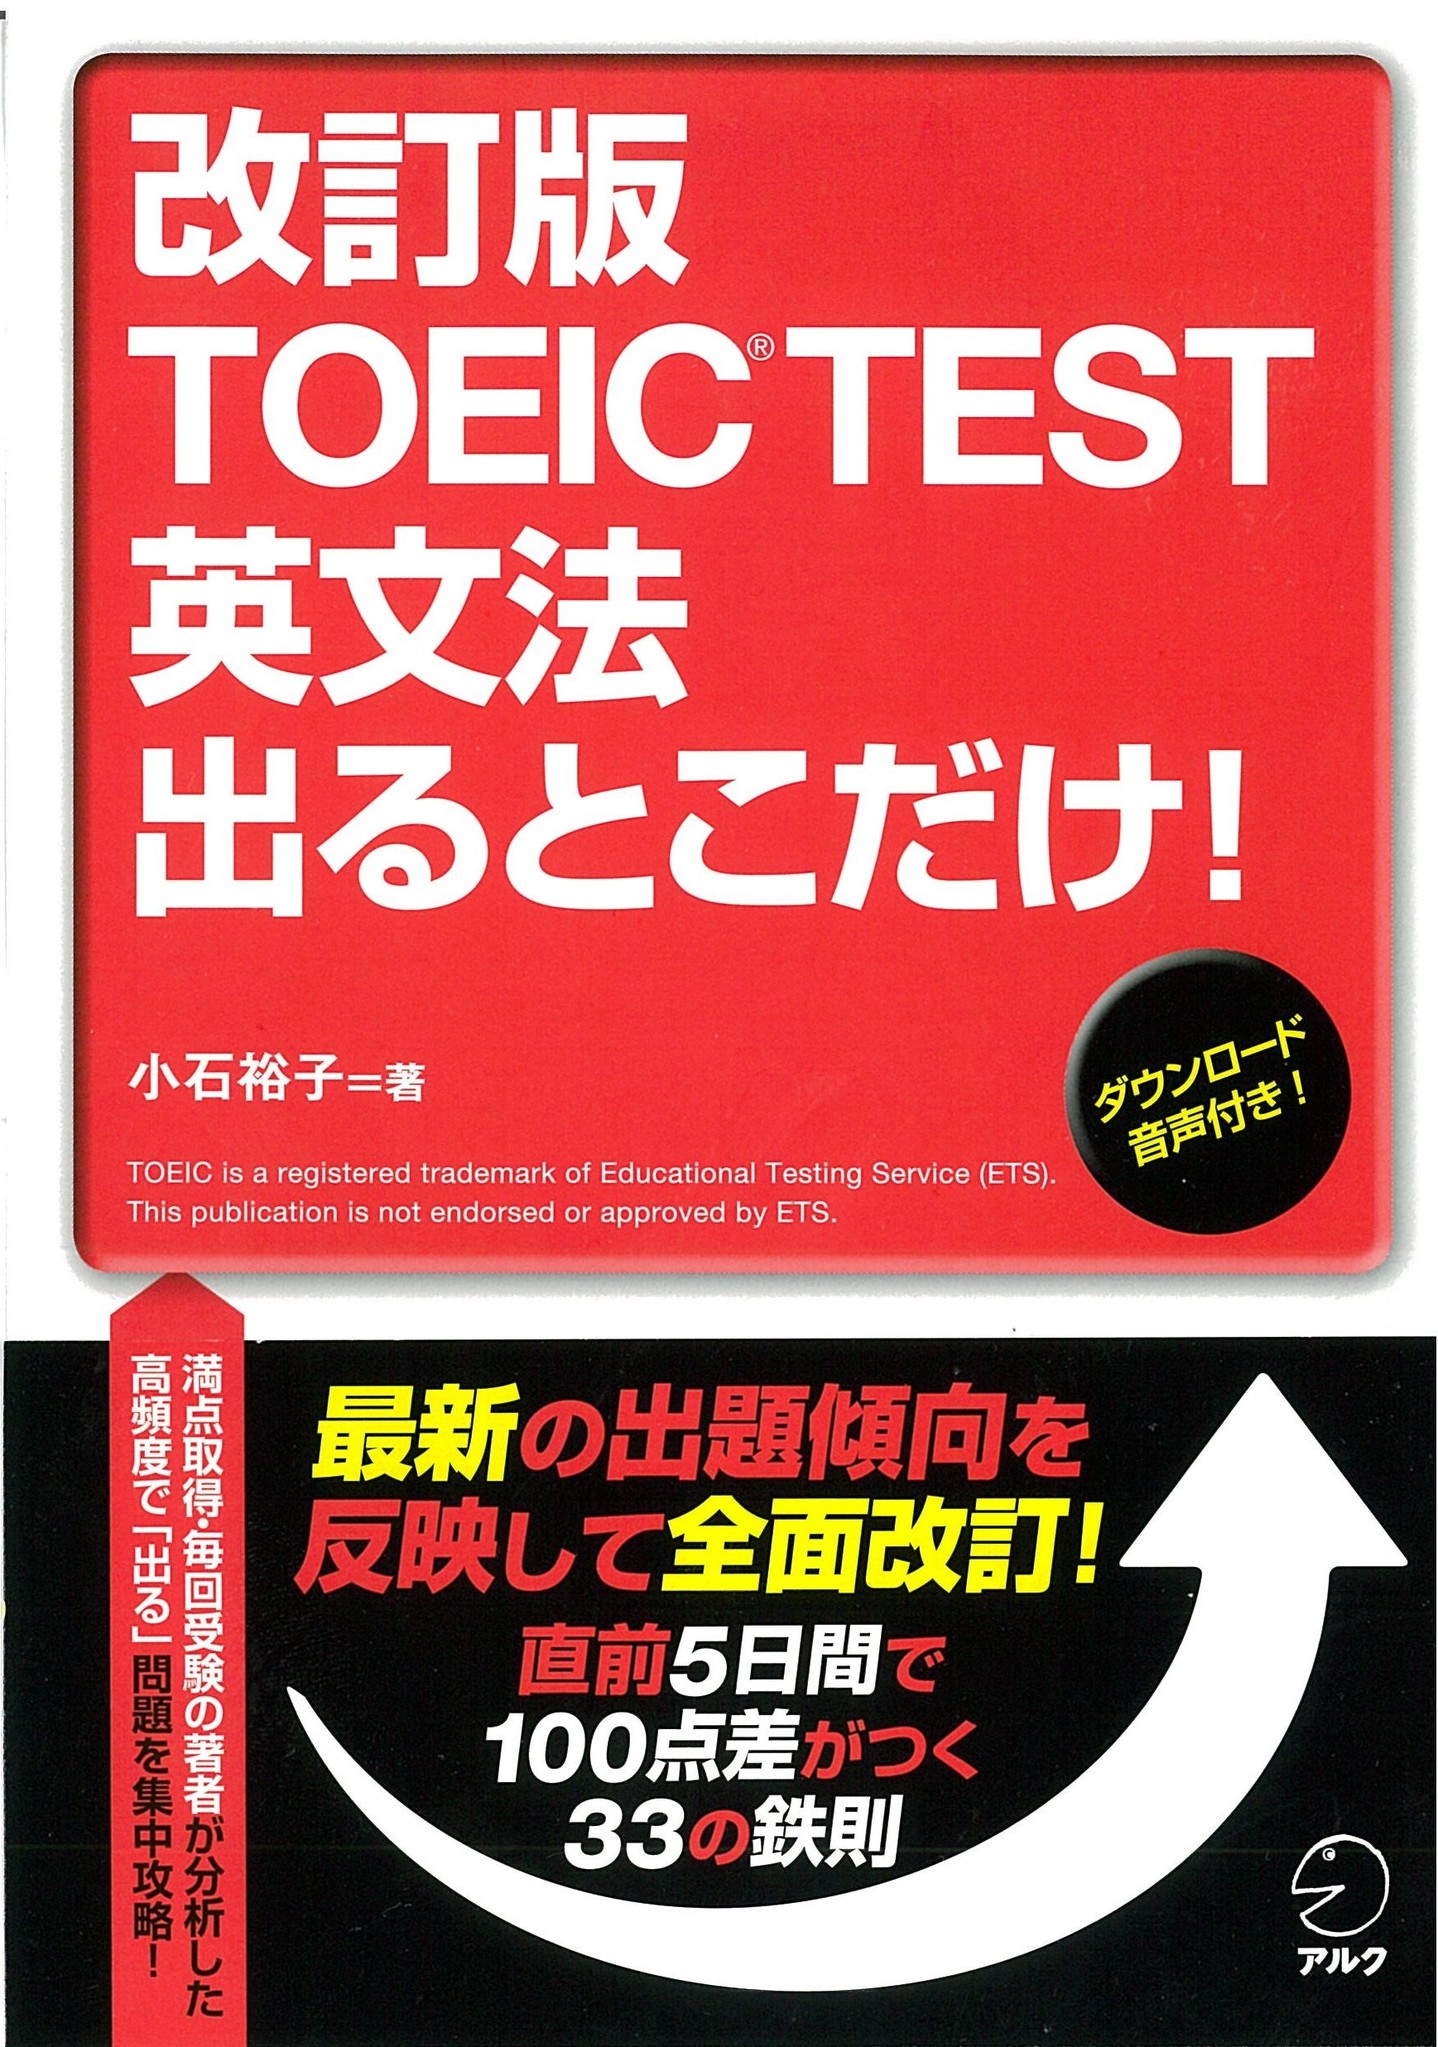 最新の出題傾向を反映して全面改訂 改訂版 Toeic R Test 英文法 出るとこだけ 改訂版 Toeic R Test 文法 語彙 出るとこだけ 問題集 1月27日同時発売 株式会社アルクのプレスリリース